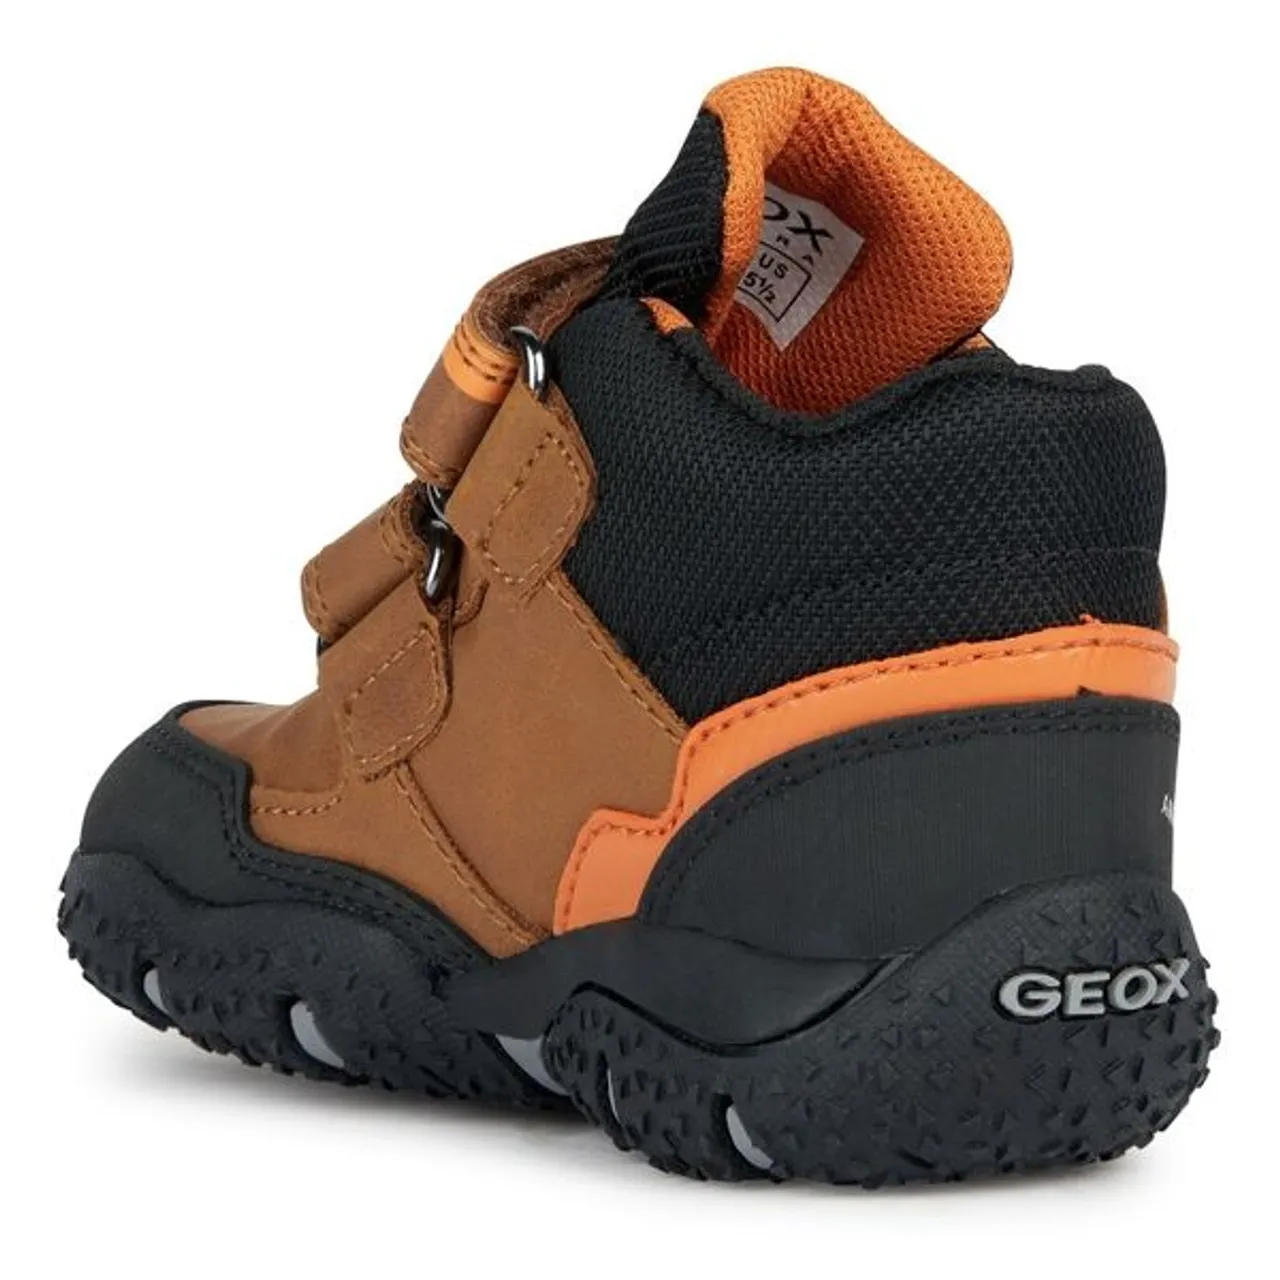 Lauflernschuh GEOX "B BALTIC BOY B ABX" Gr. 23, bunt (braun, schwarz, orange) Kinder Schuhe Lauflernschuhe